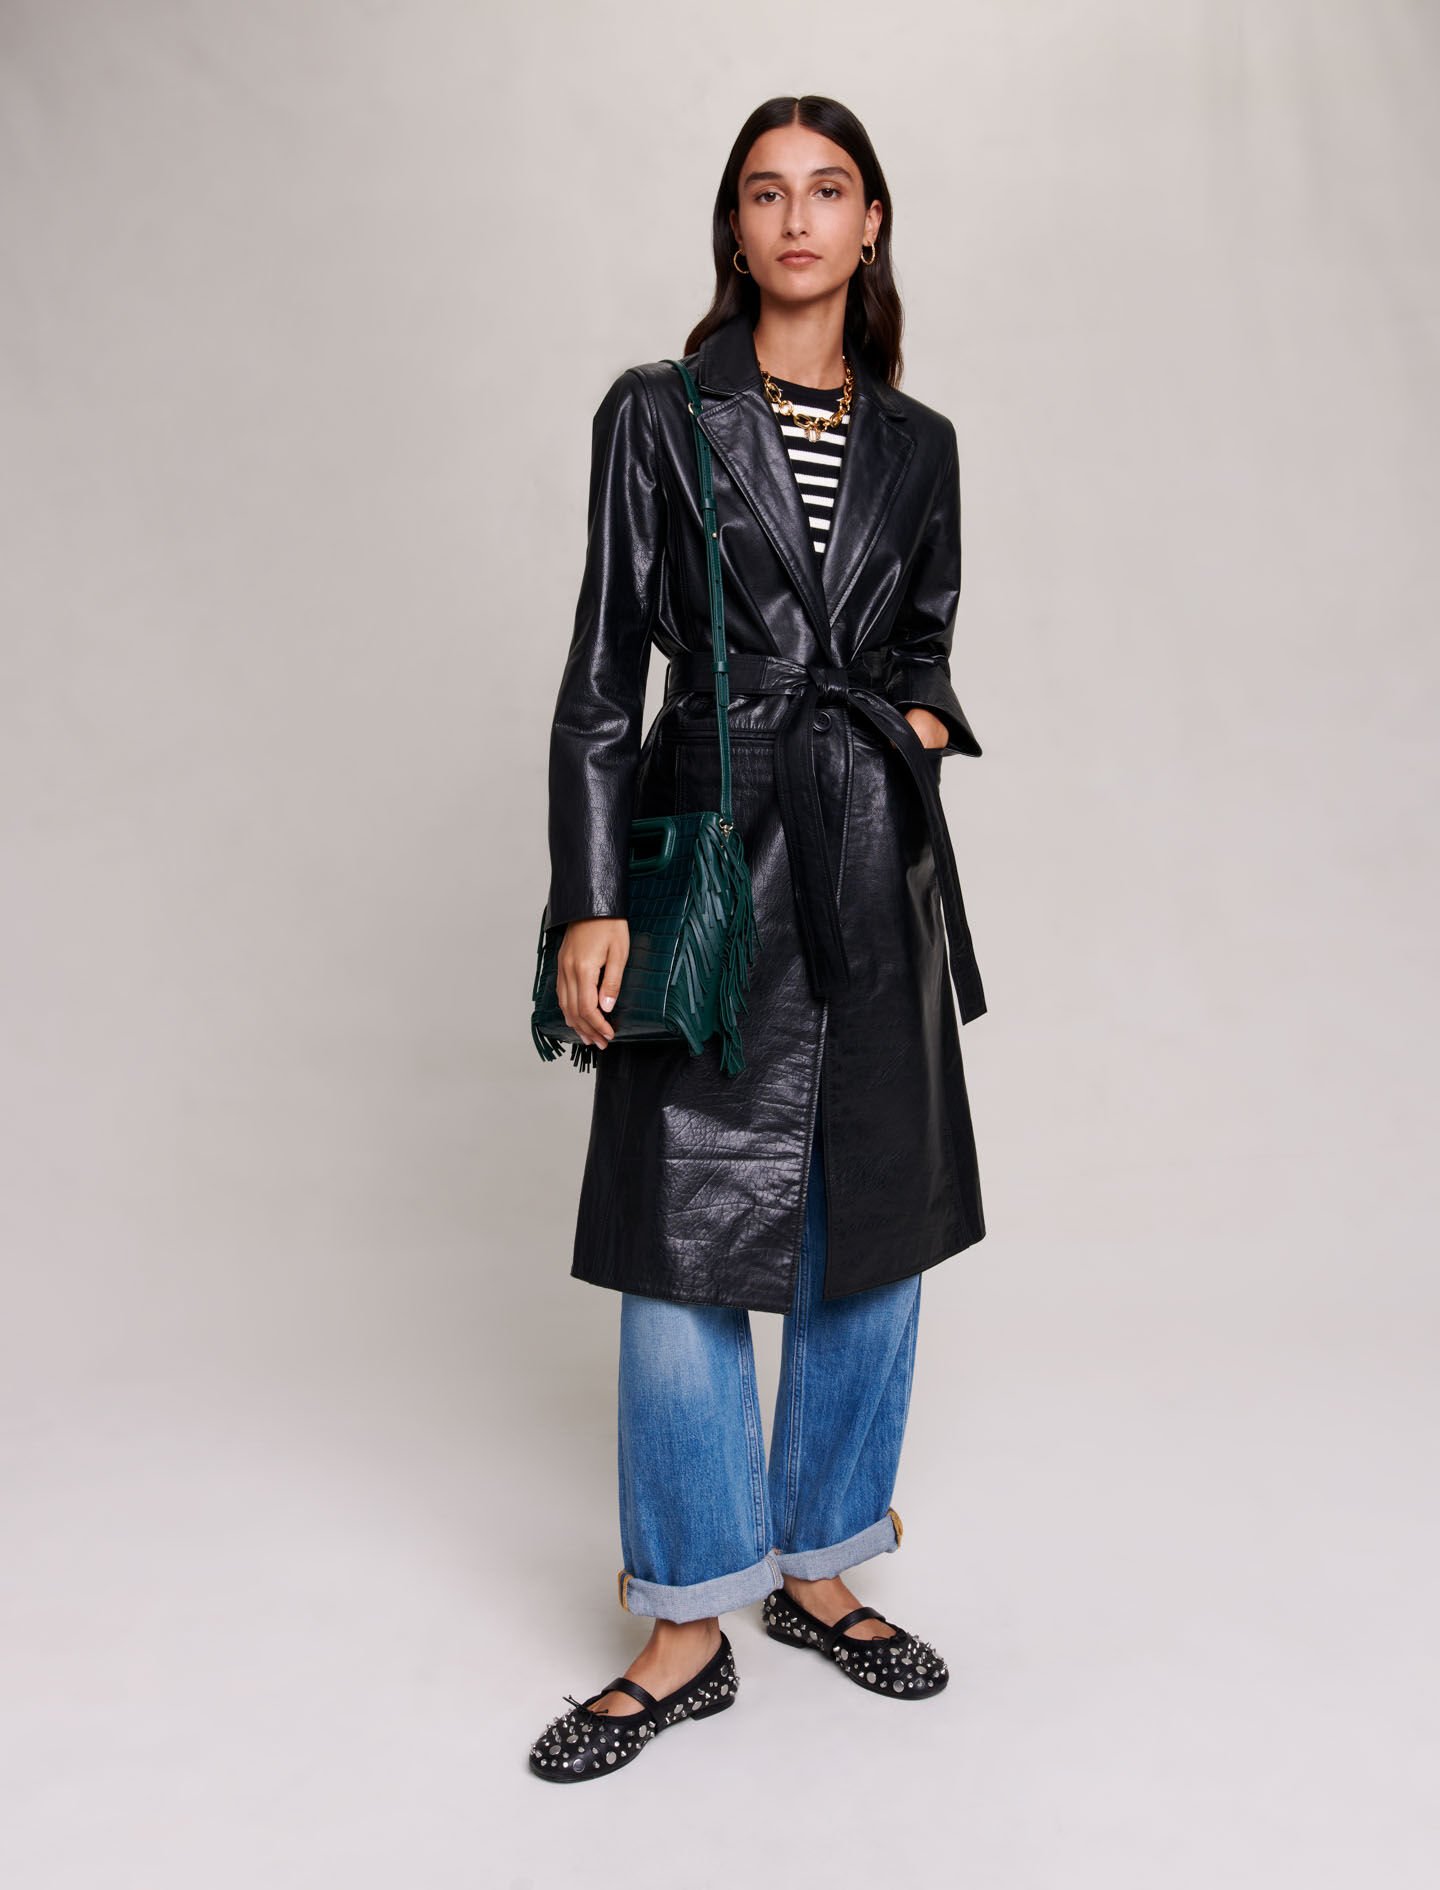 Coats & Jackets on Sale - Women Clothing | Maje.com